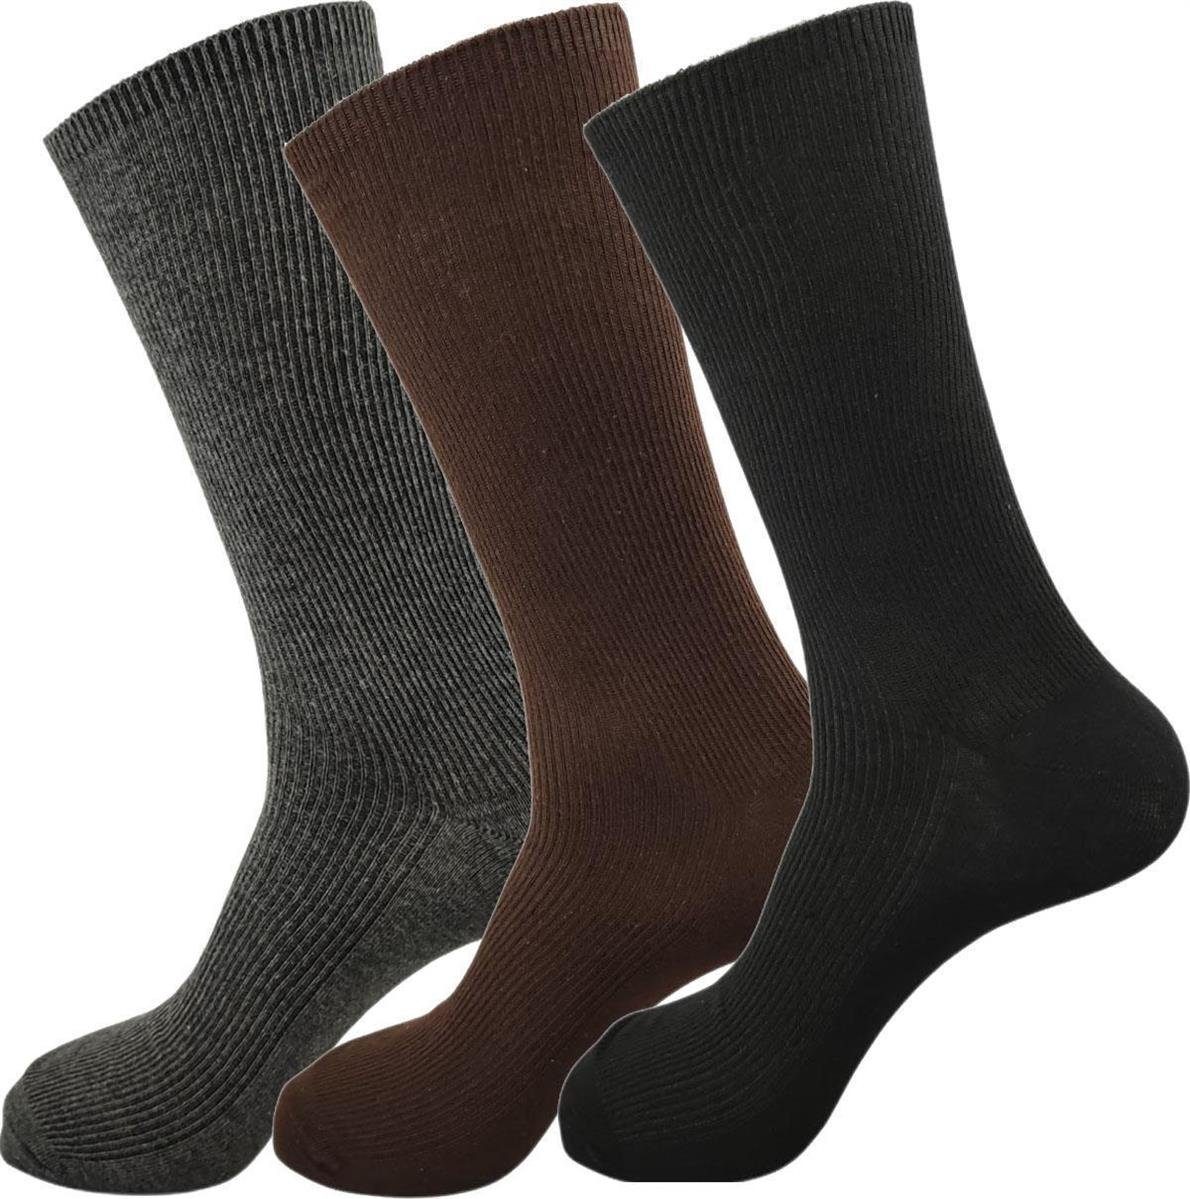 EloModa Basicsocken 3 Paar Socken in klassischer Form Freizeit Anzug Business; (3-Paar) Gemischt, grau, braun, schwarz